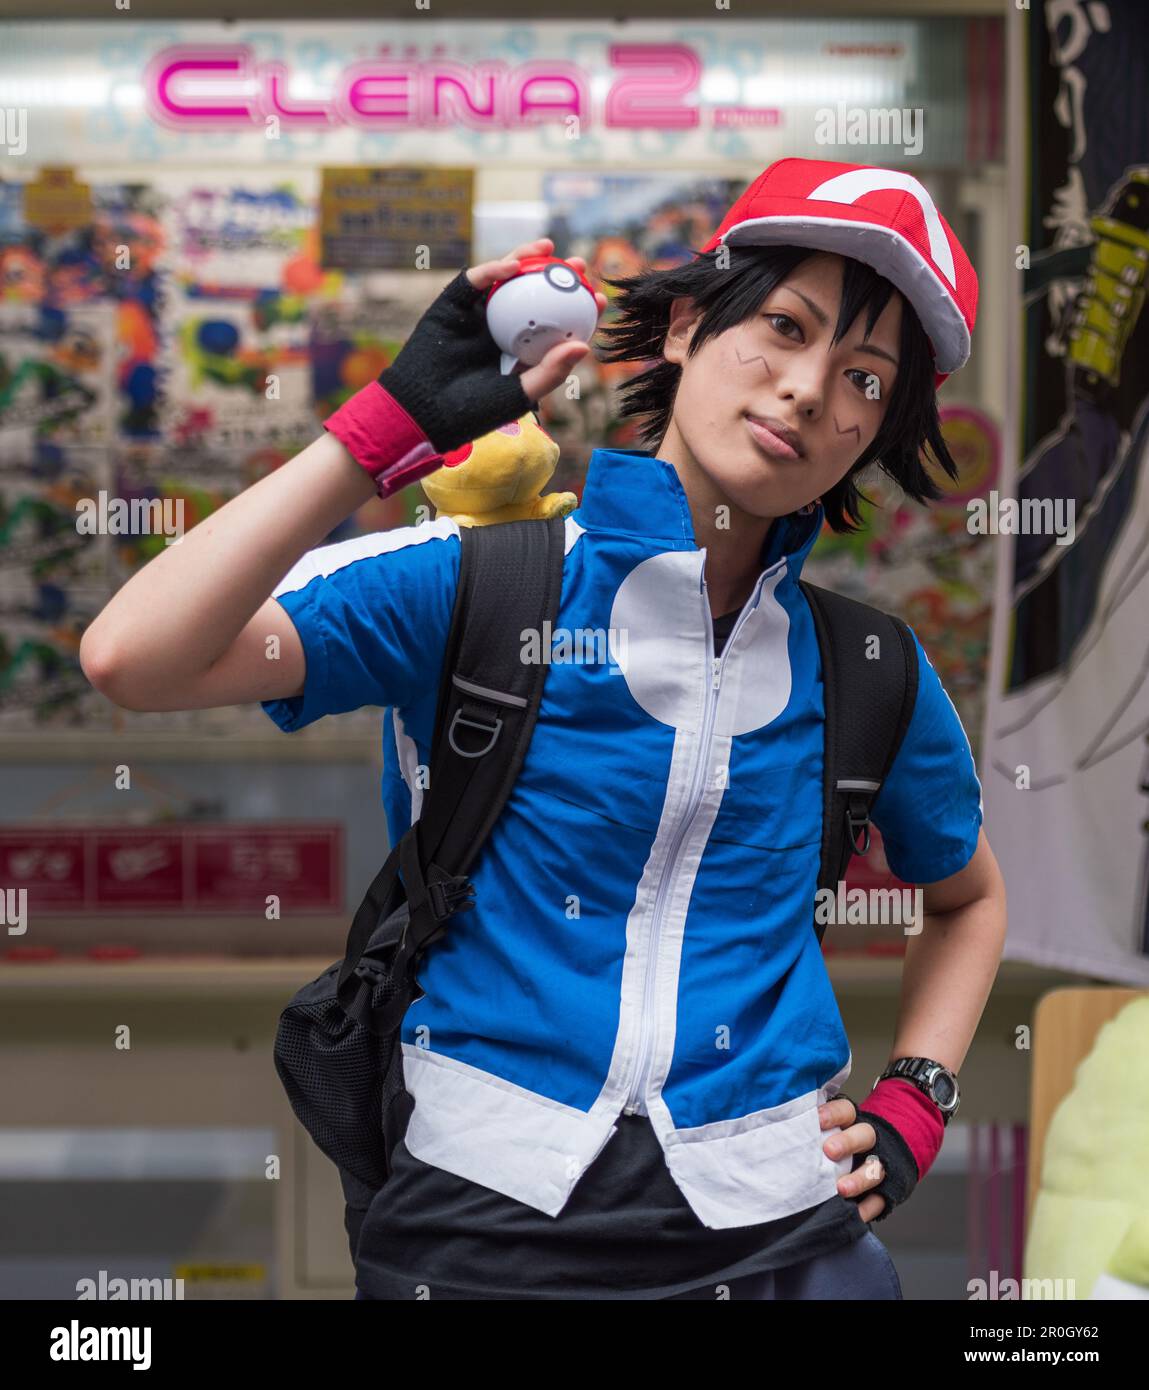 Une jeune fille japonaise s'est habillée comme Ash, l'entraîneur populaire dans le jeu Nintendo Pokemon. Banque D'Images